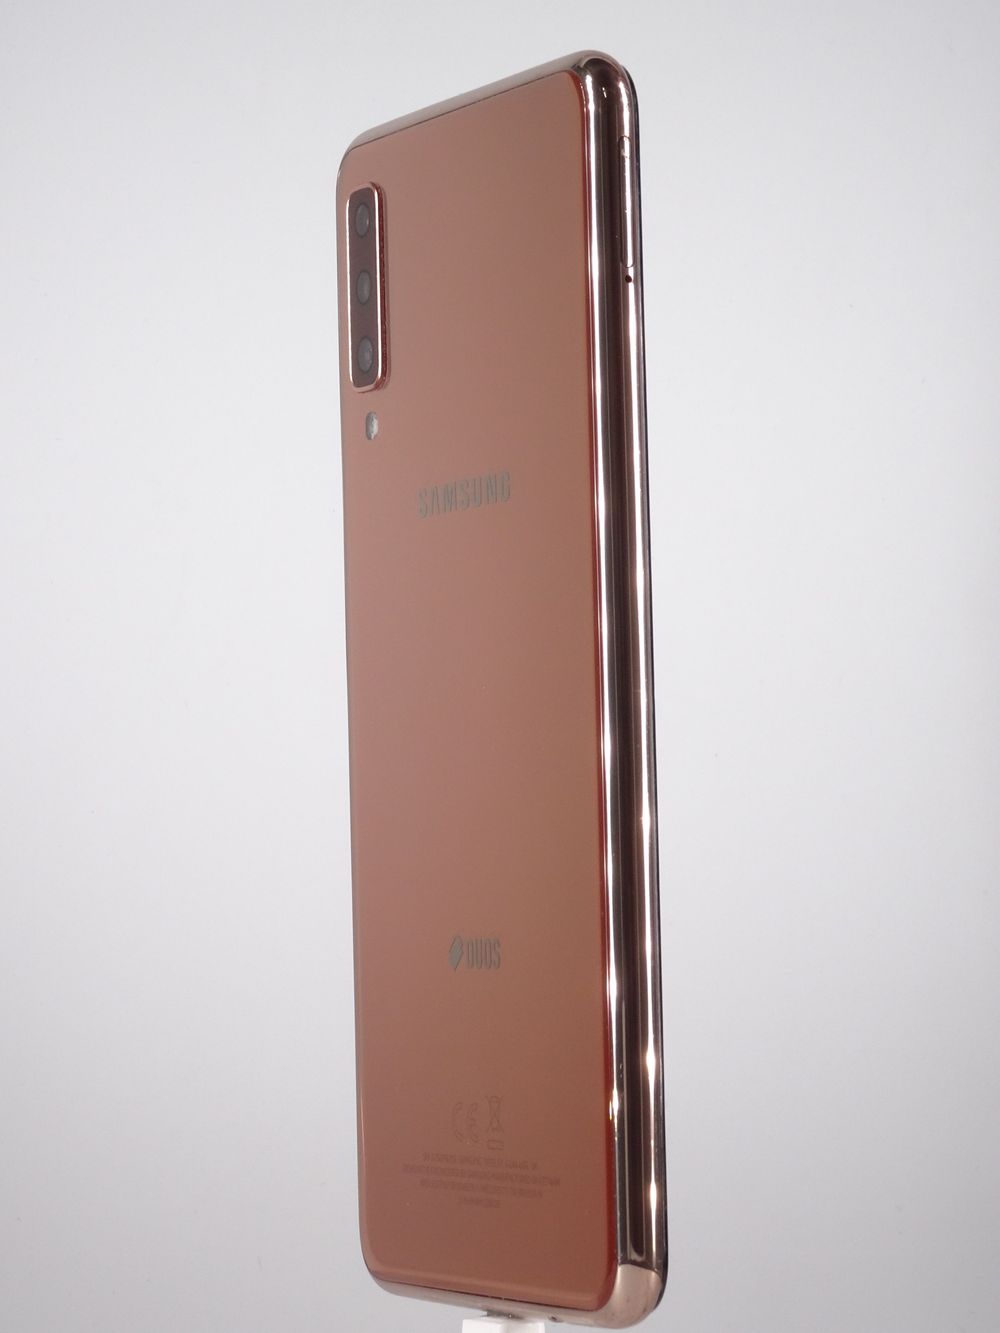 Мобилен телефон Samsung, Galaxy A7 (2018) Dual Sim, 128 GB, Gold,  Като нов